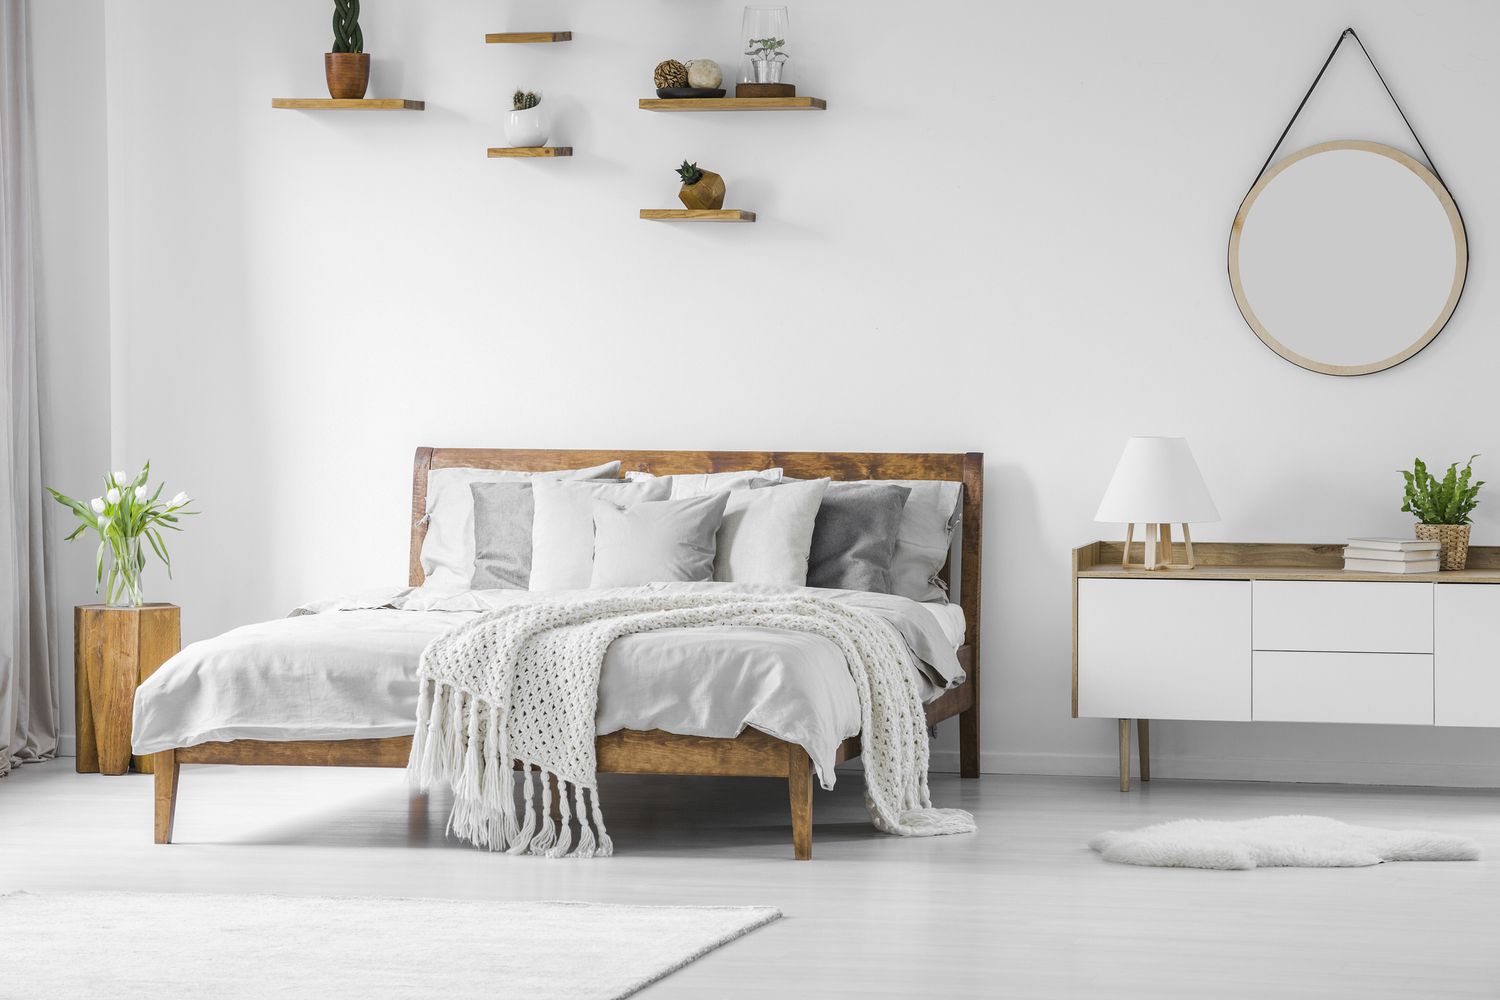 Bequemes großes Bett mit Holzrahmen, Bettwäsche, Kissen und Decke, Nachttisch daneben und runder Spiegel an einer weißen Wand in einem hellen Schlafzimmer.